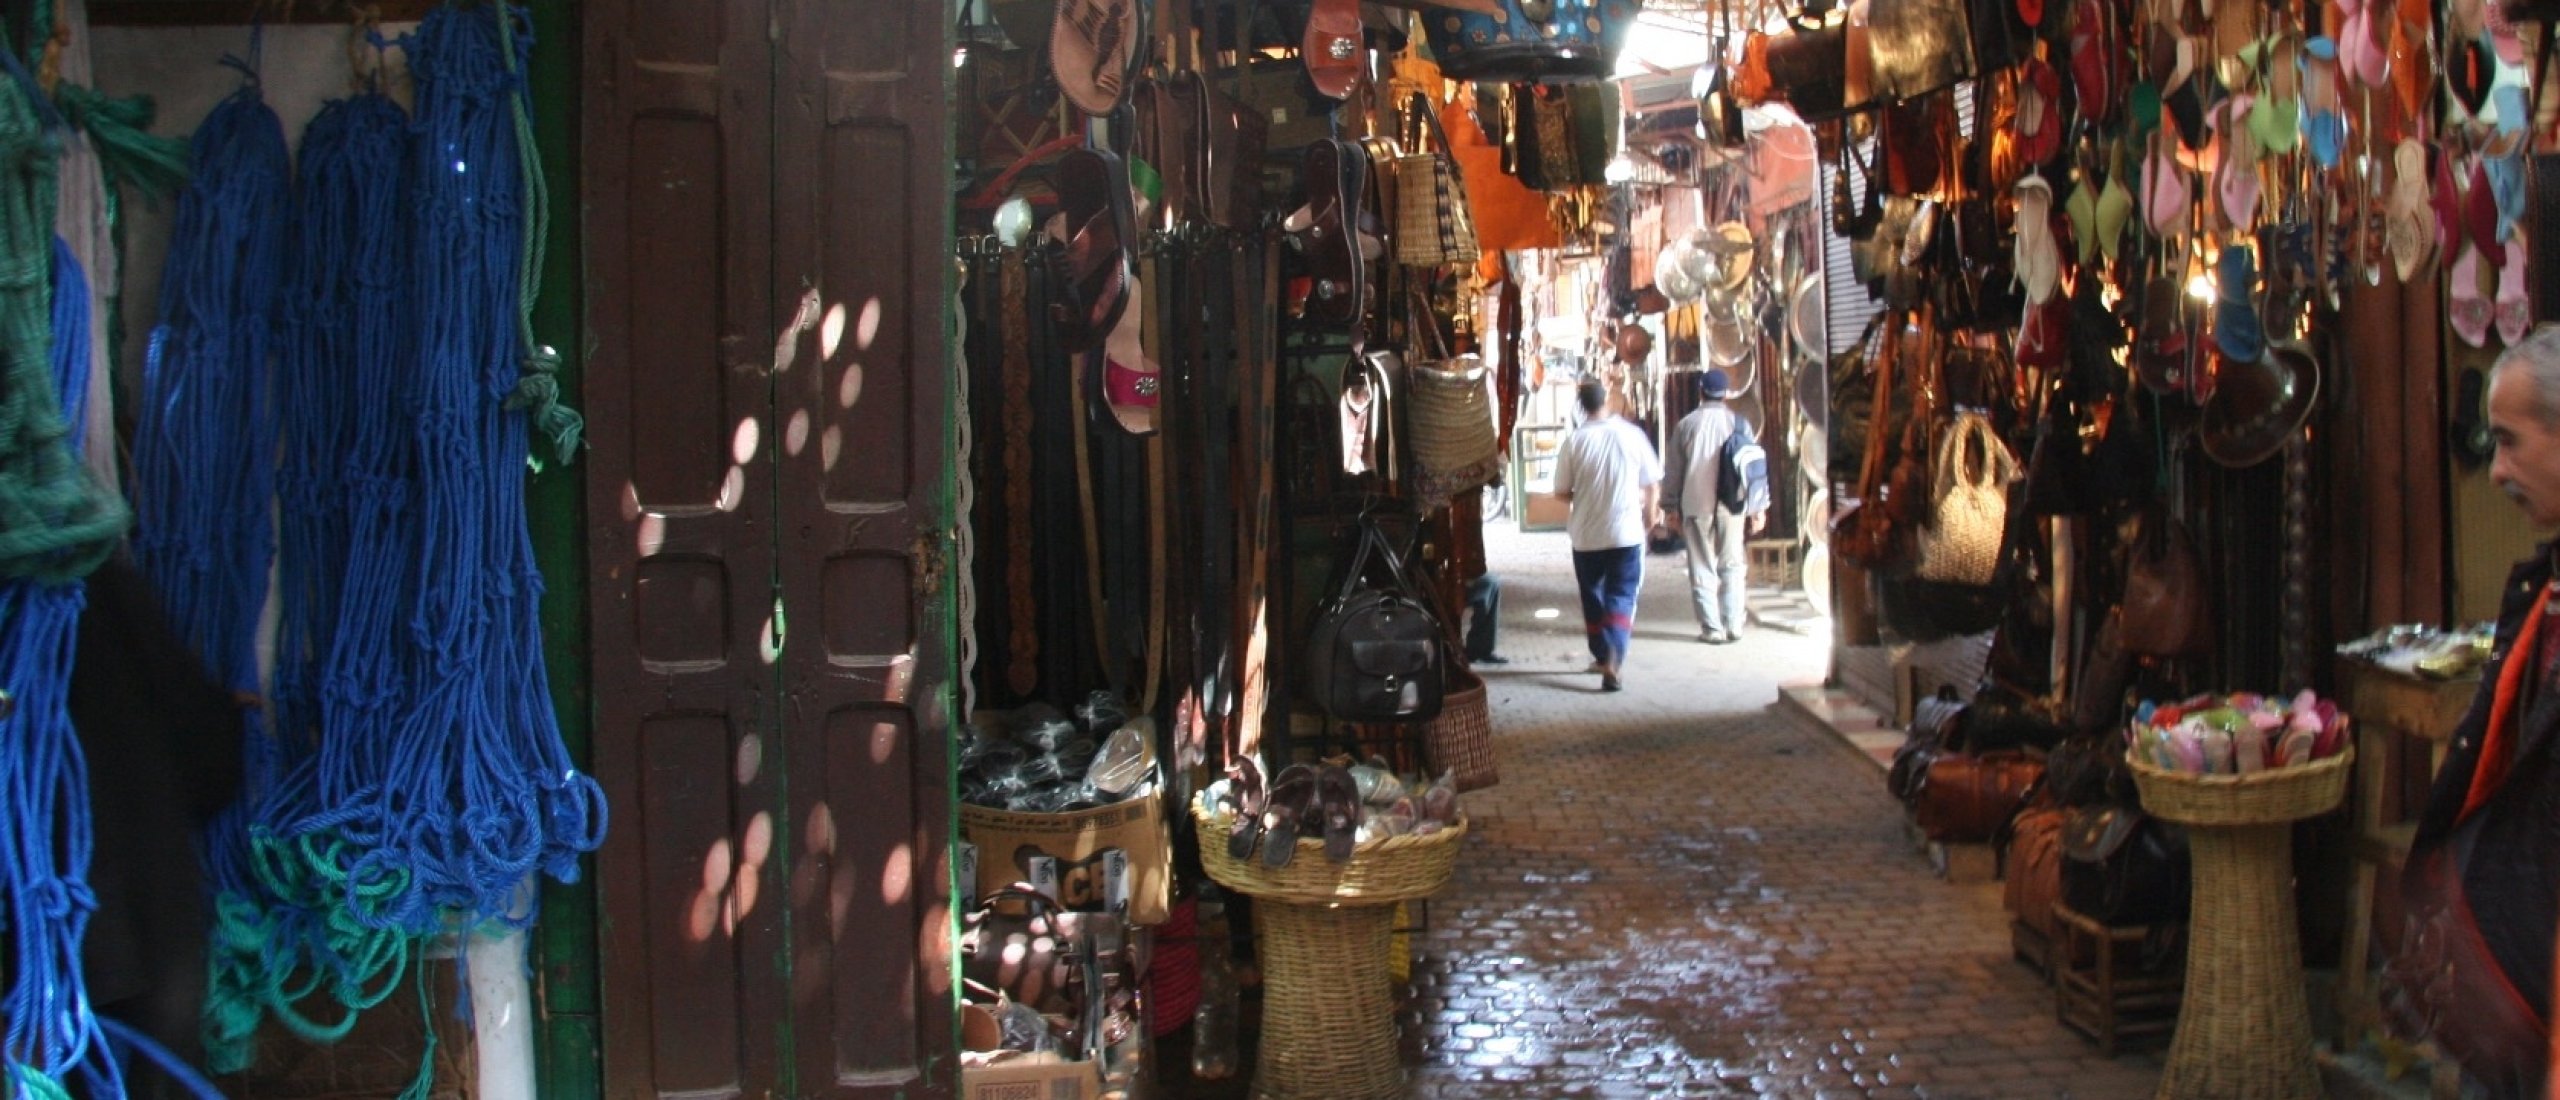 Plakkracht | Wat de meeste schrijvers nalaten (en de marktkooplui van Marrakesh niet)